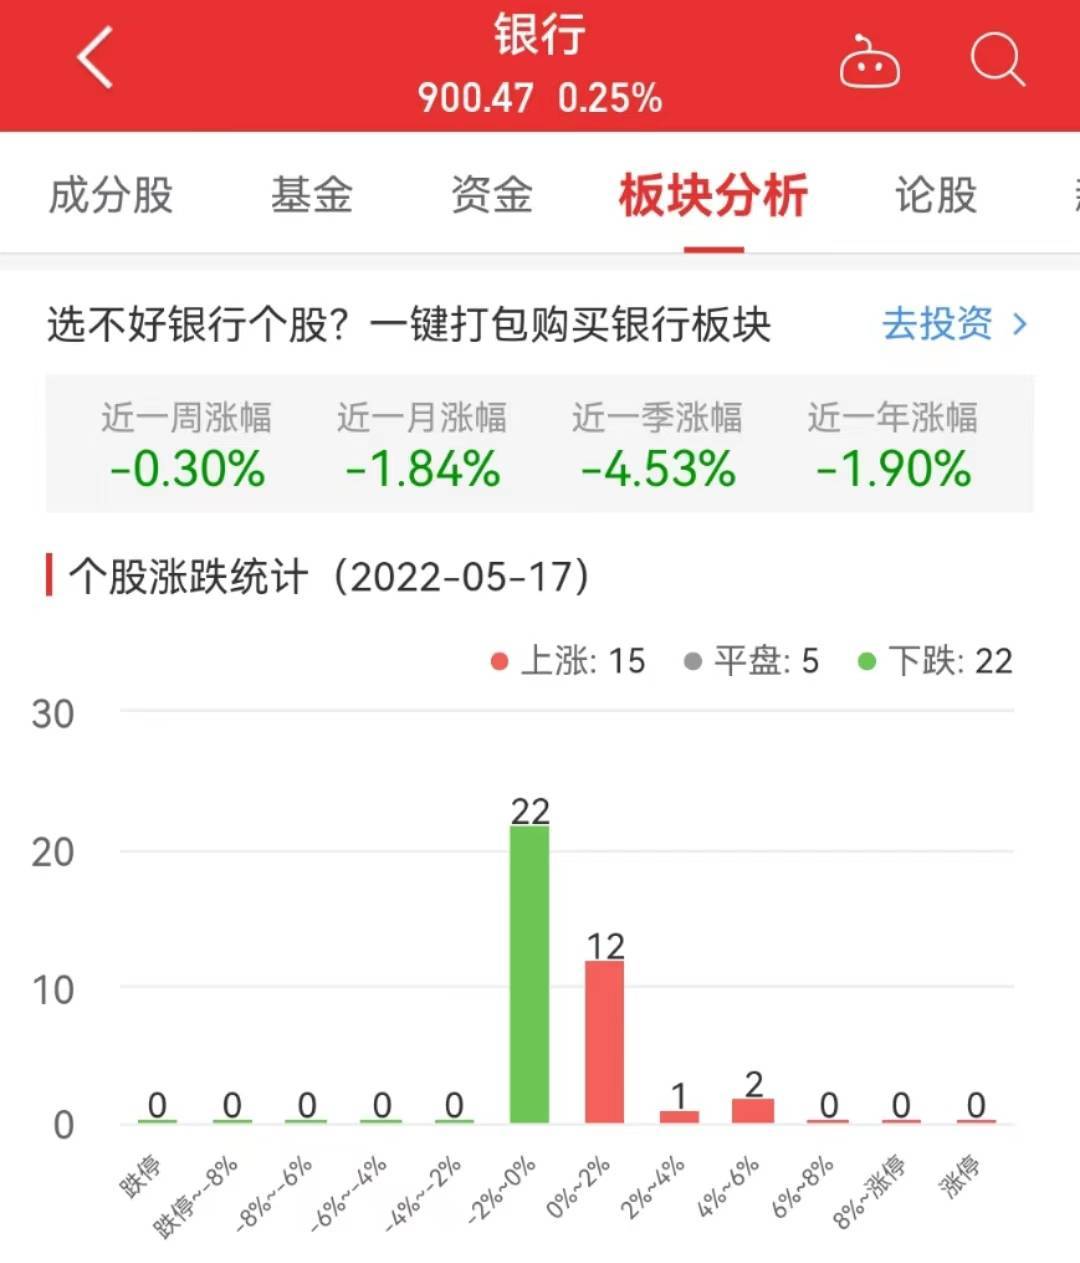 25% 南京银行涨542%居首